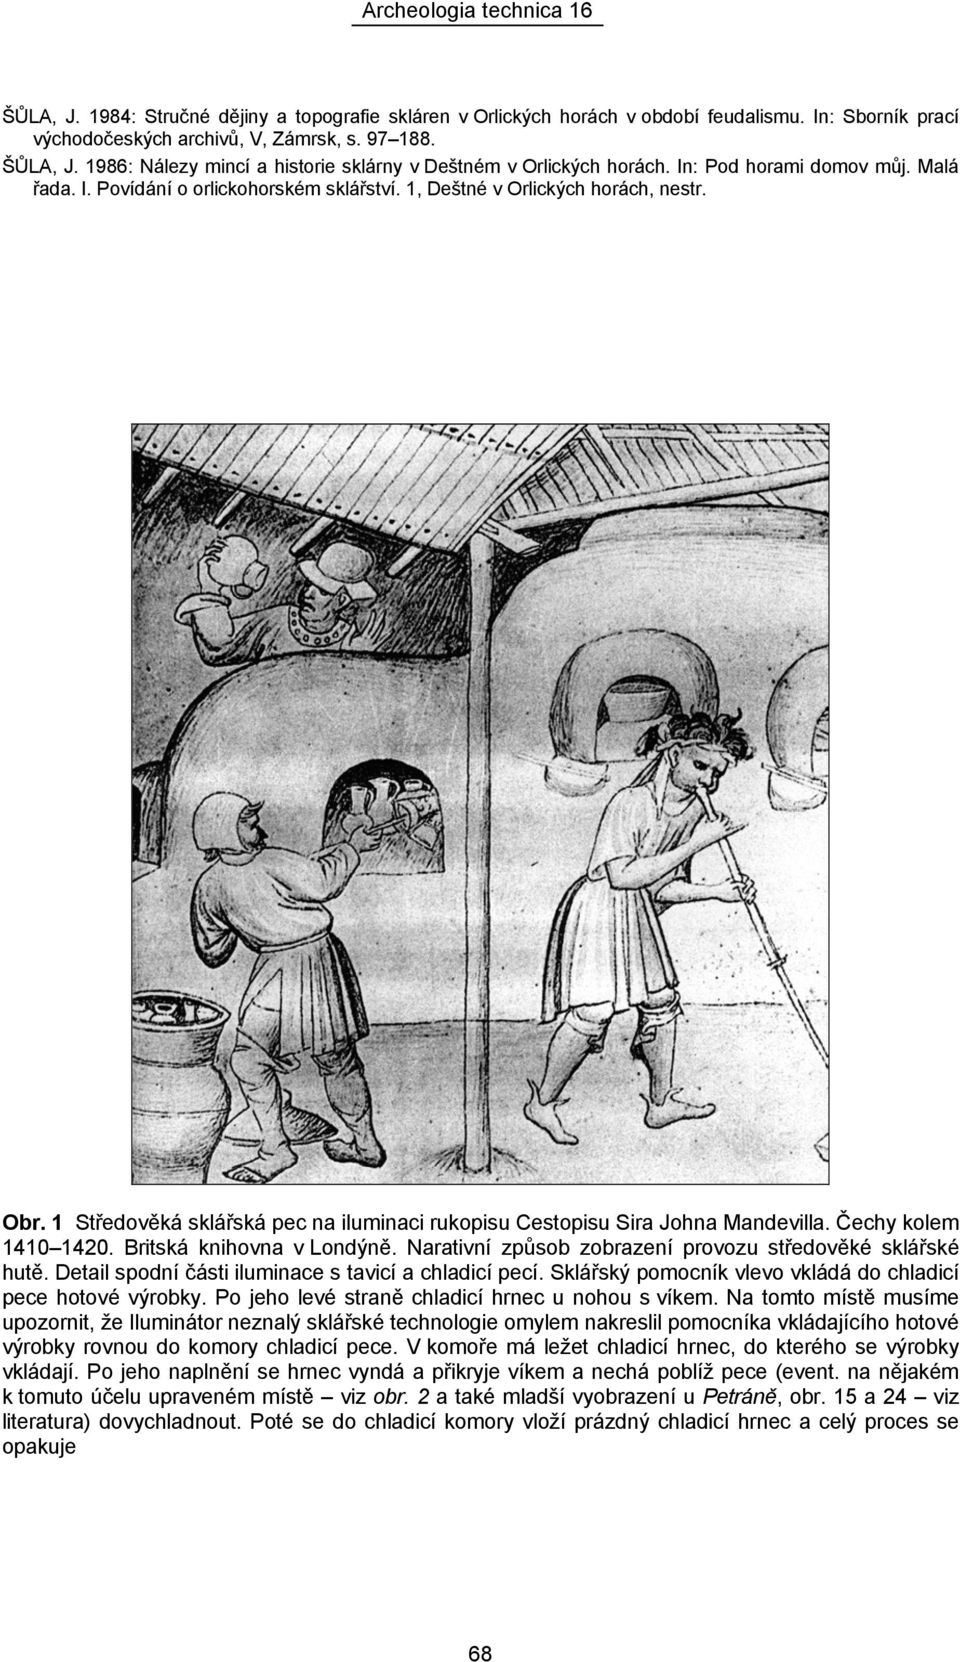 1 Středověká sklářská pec na iluminaci rukopisu Cestopisu Sira Johna Mandevilla. Čechy kolem 1410 1420. Britská knihovna v Londýně. Narativní způsob zobrazení provozu středověké sklářské hutě.